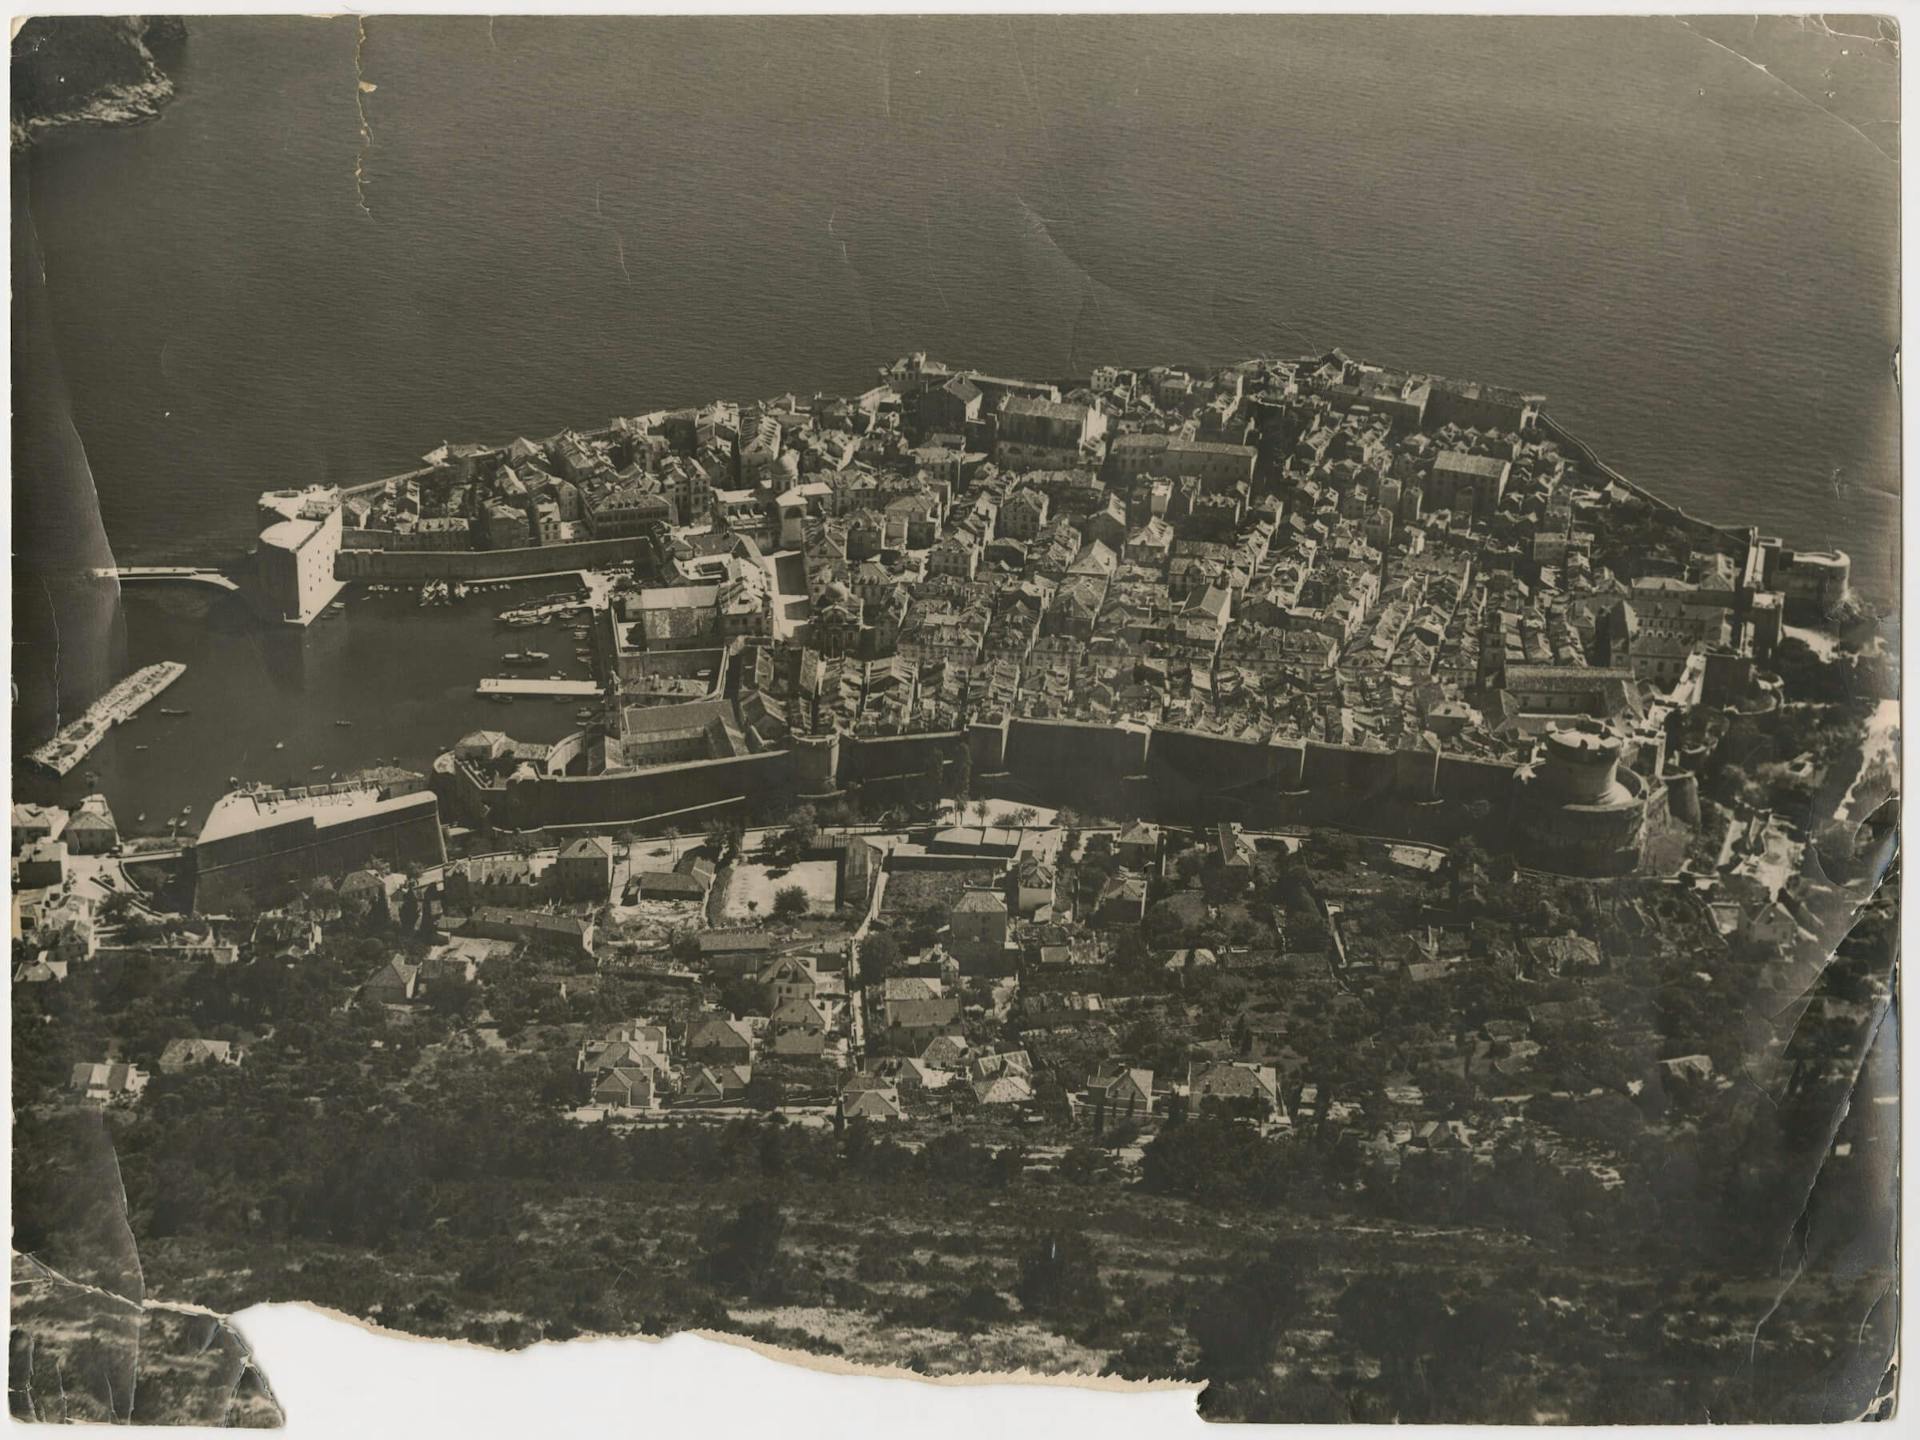 Dubrovnik 1956. Collectie Het Nieuwe Instituut, TTEN f6 